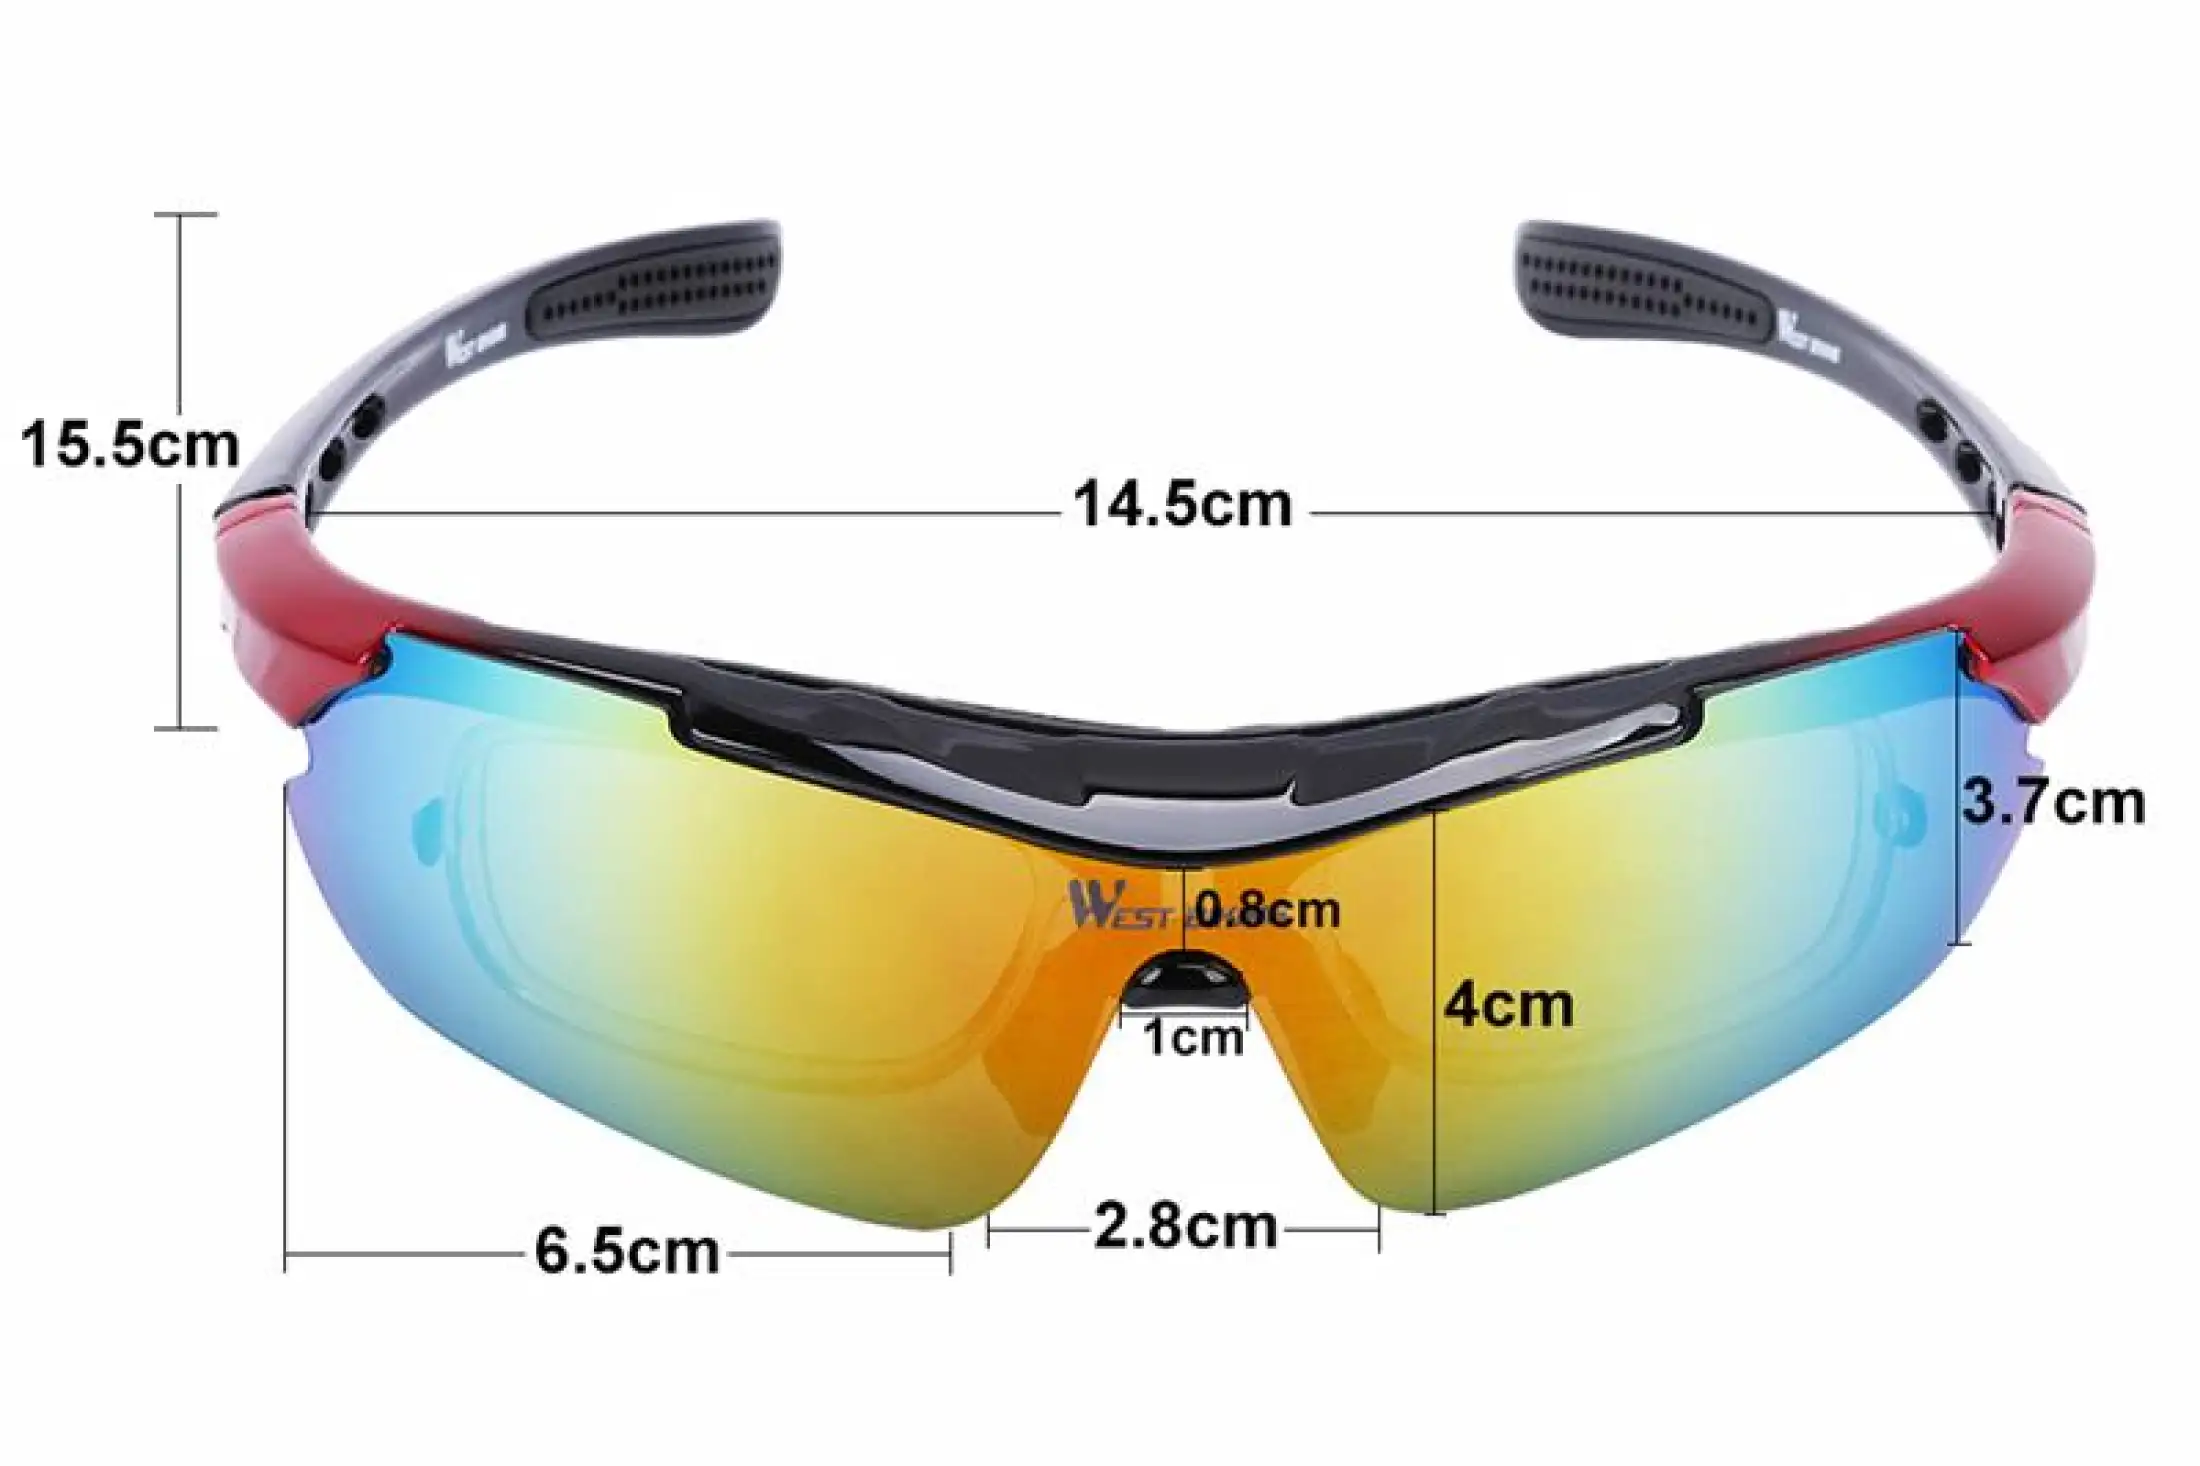 Tsafrer Polarized Sunglasses 2 Pack Sports Sunglasses for Men Women Interchangeable Lens 